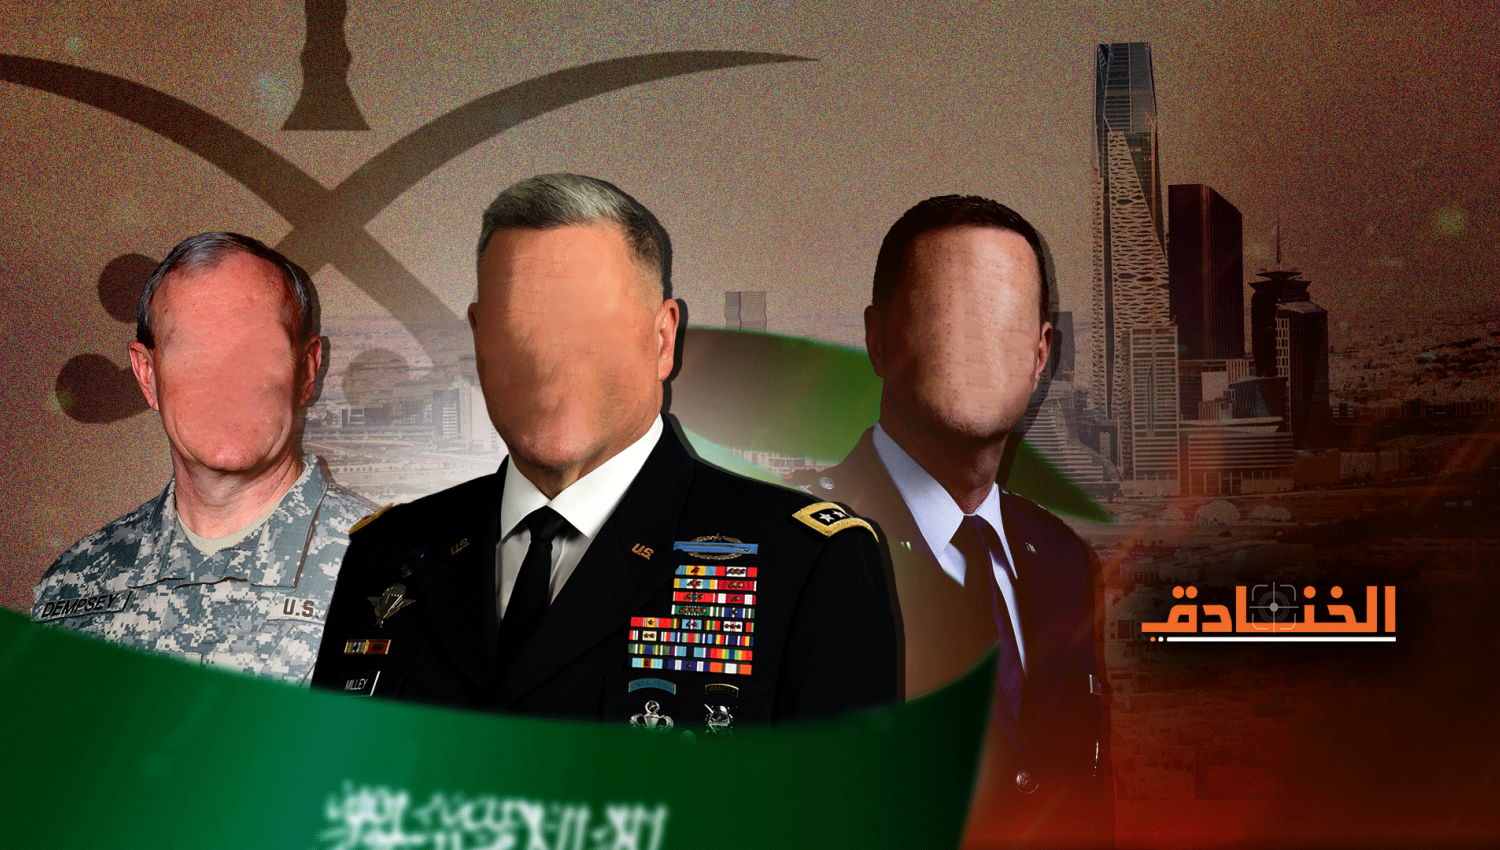 كيف ينعكس توتر العلاقات على الضباط الأميركيين في السعودية؟ 